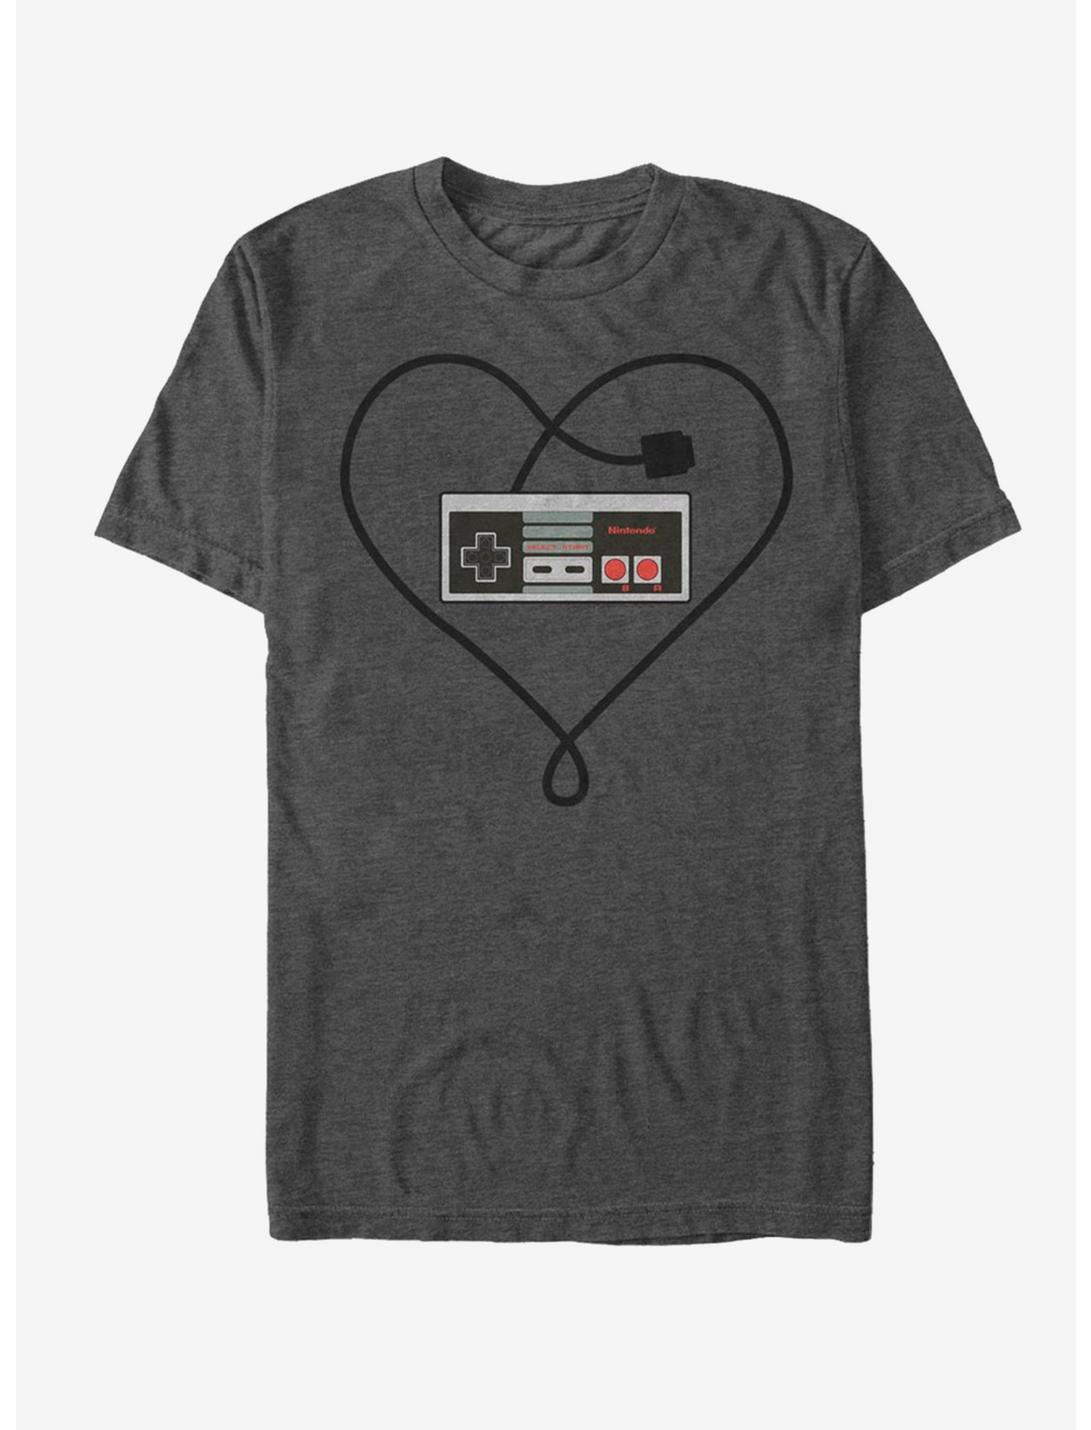 Nintendo Heart Controller T-Shirt, CHAR HTR, hi-res